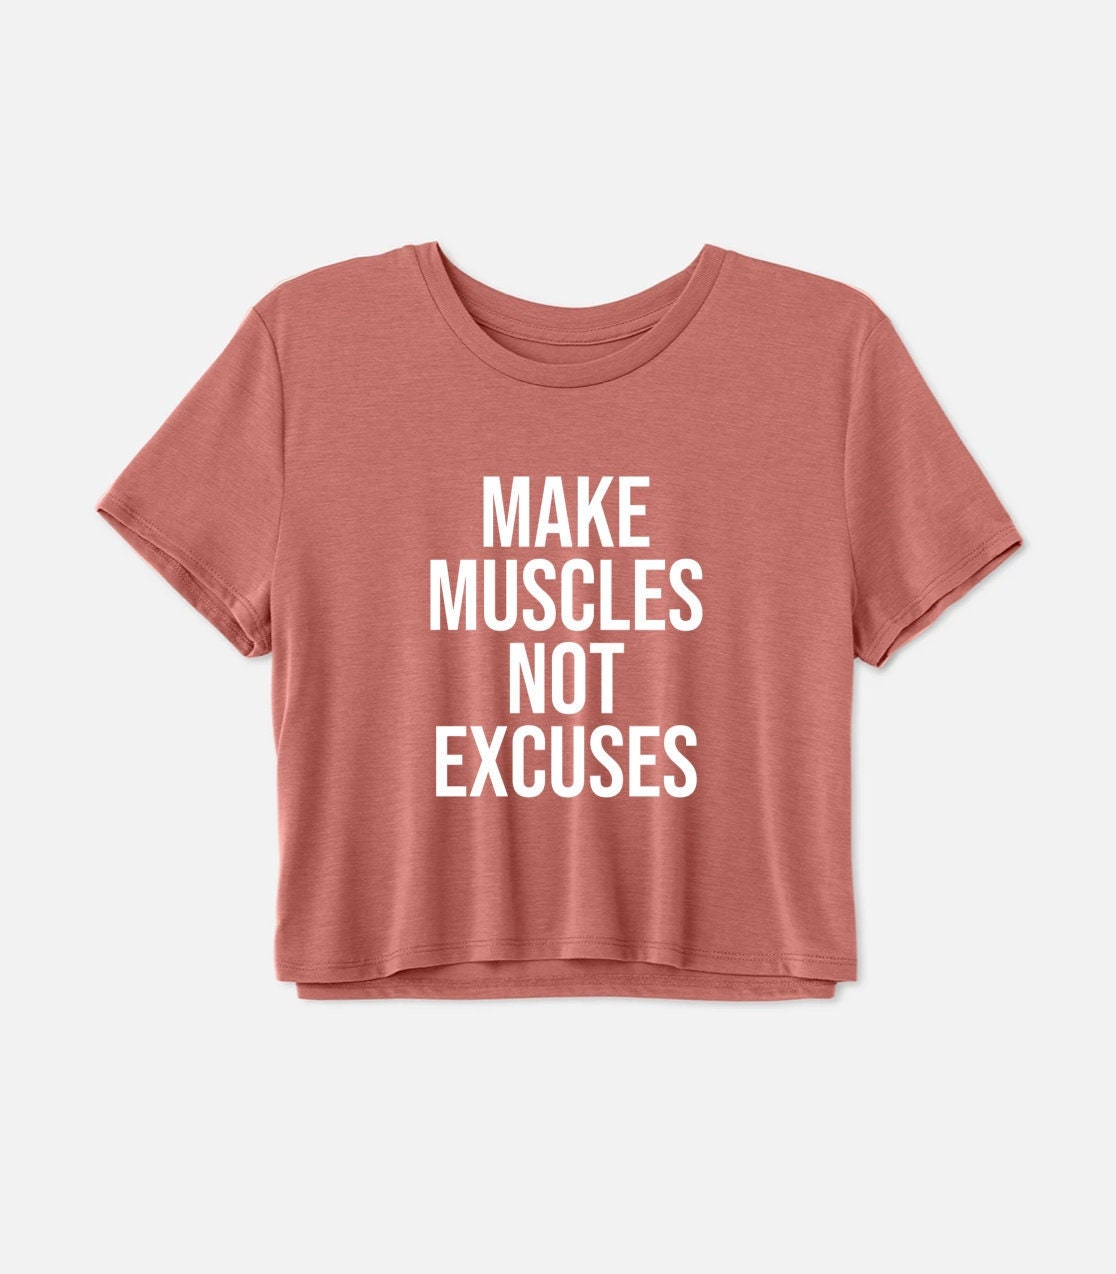 Workout-Crop-Top | Gym-Shirt Trainingsmotivation Hebeshirt Fitness-Shirt Boxshirt Machen Sie Muskeln, Keine Ausreden von GymWeekendApparel